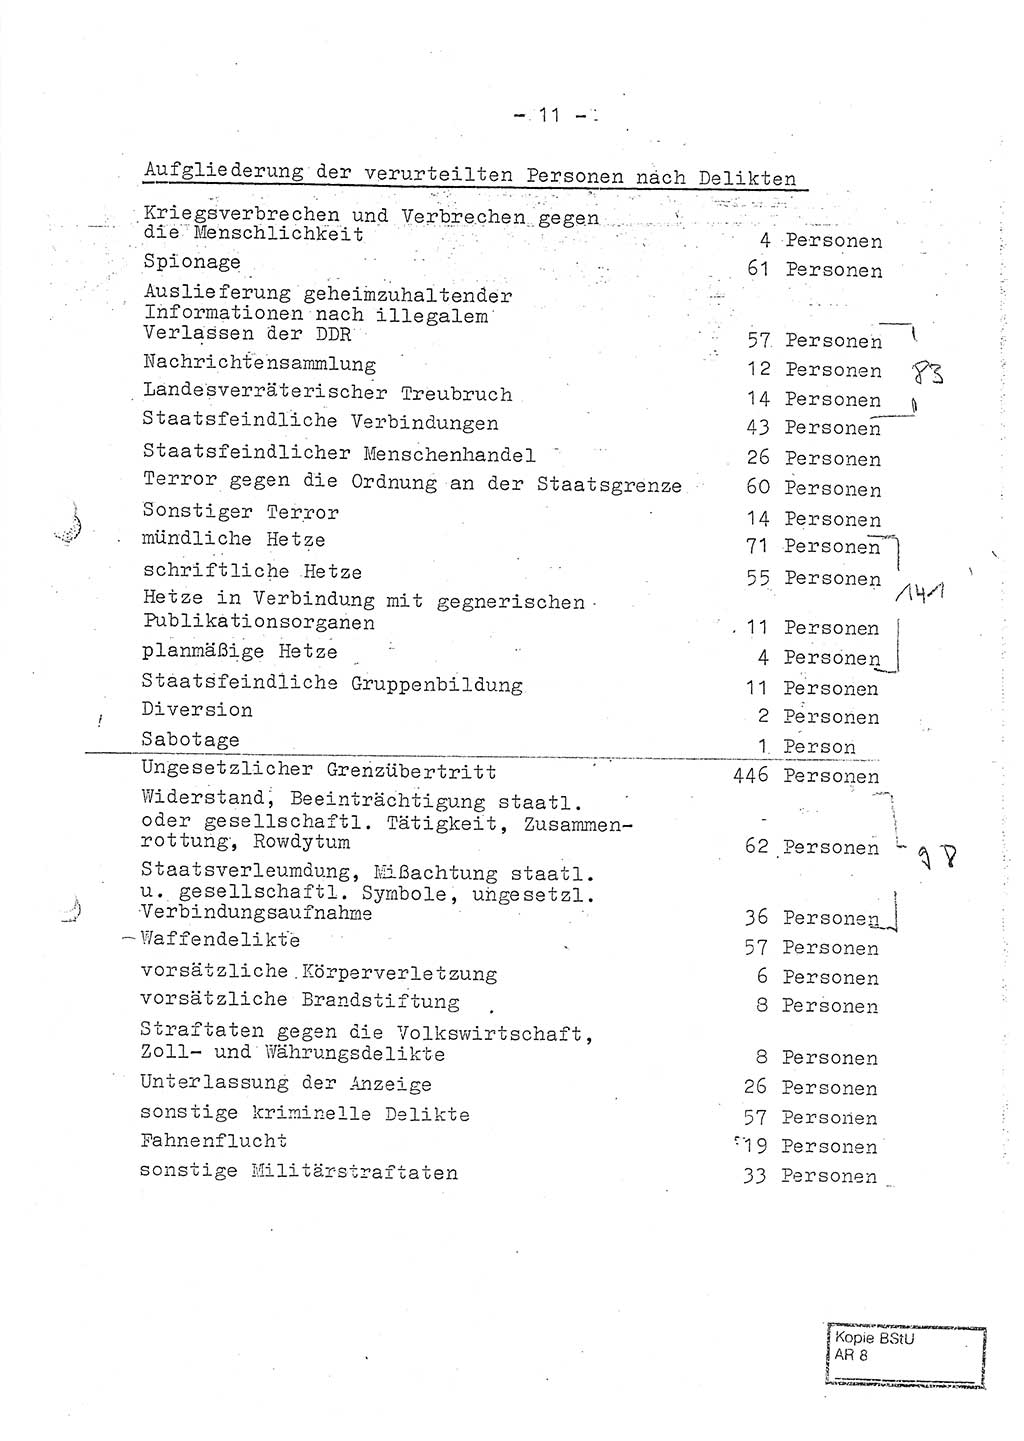 Jahresbericht der Hauptabteilung (HA) Ⅸ 1970, Ministerium für Staatssicherheit (MfS) der Deutschen Demokratischen Republik (DDR), Berlin 1971, Seite 11 (J.-Ber. MfS DDR HA Ⅸ /70 1971, S. 11)